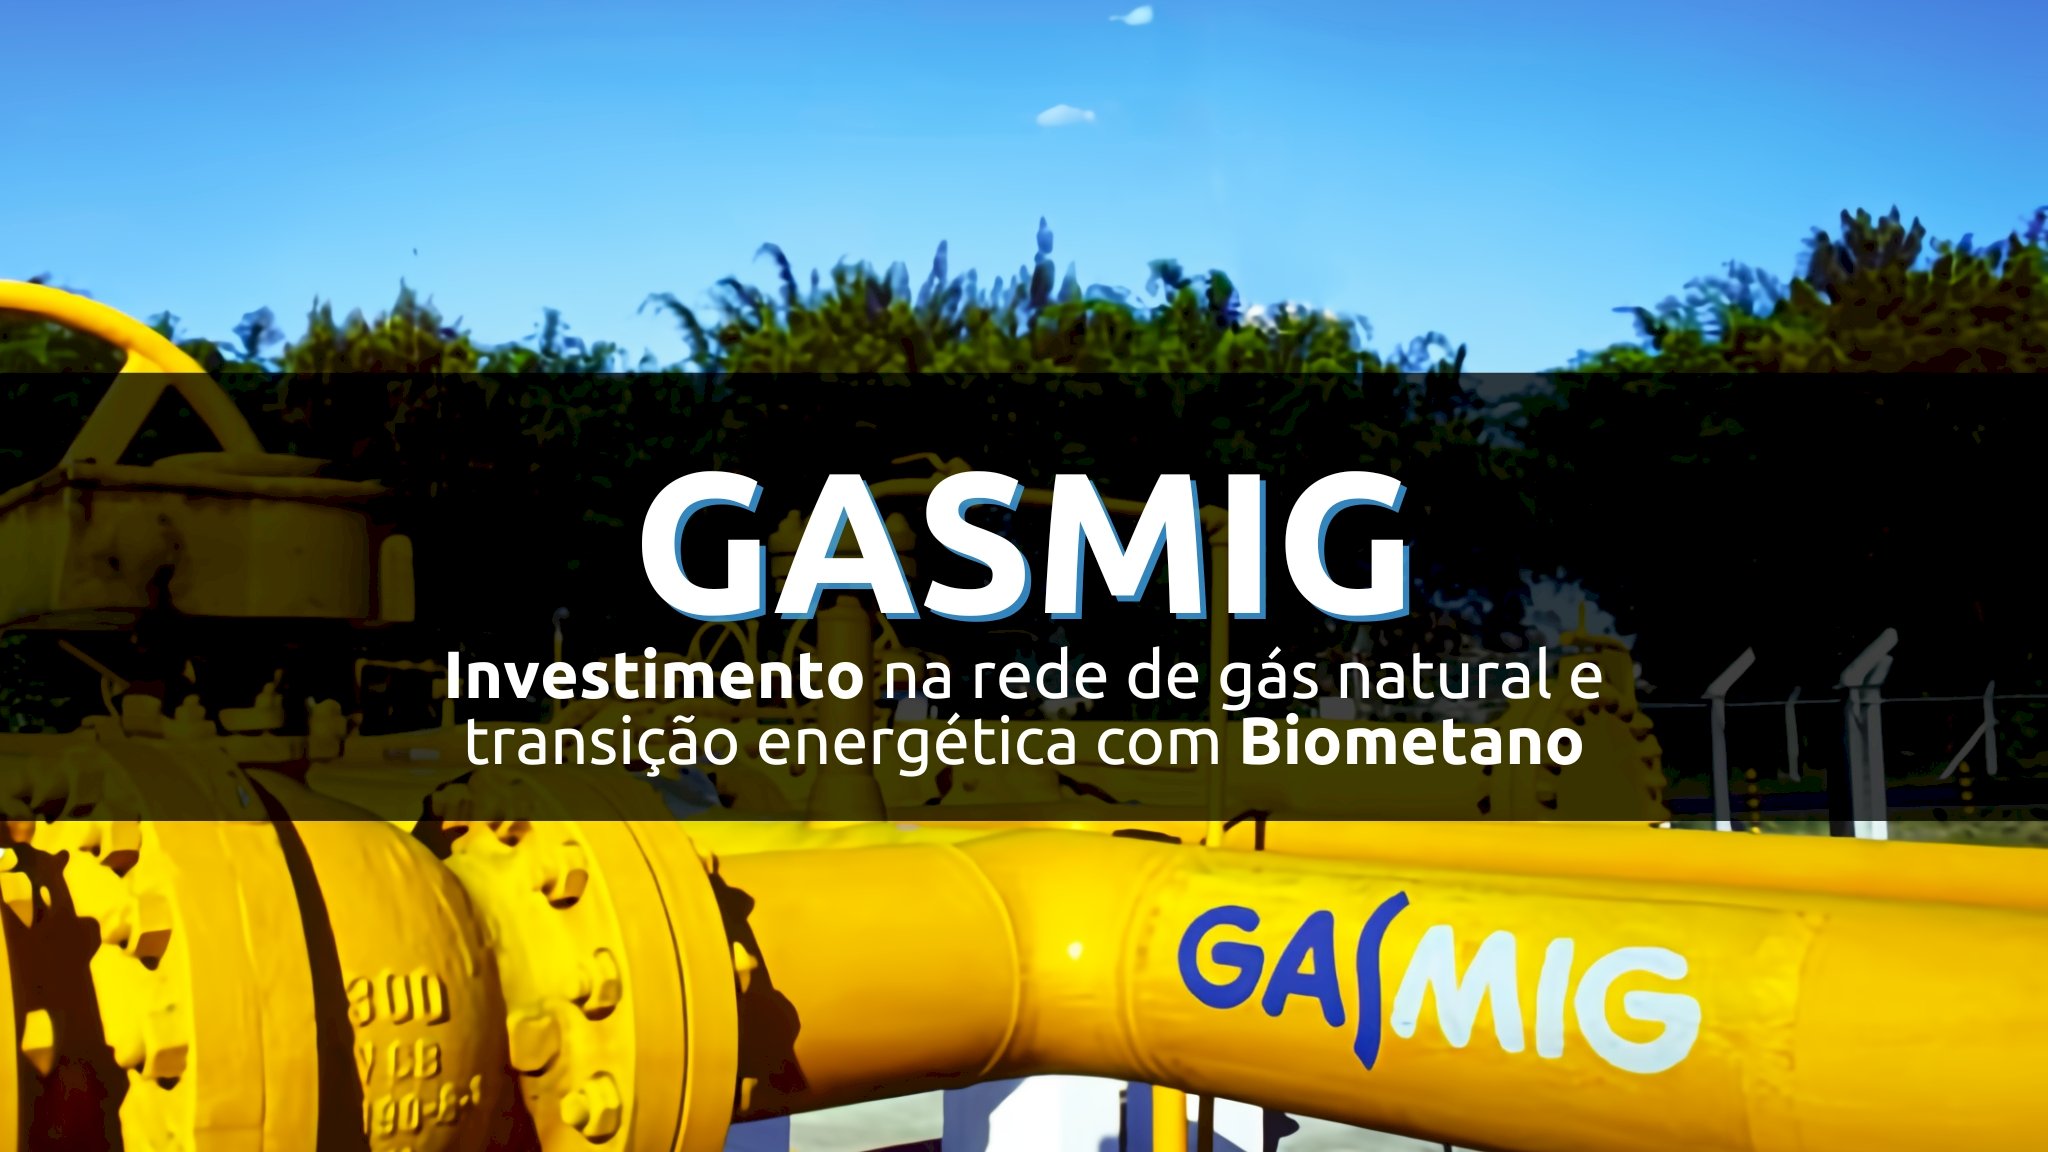 Gasmig eleva investimentos nos últimos 10 anos e também vislumbra futuro sustentável com Biometano